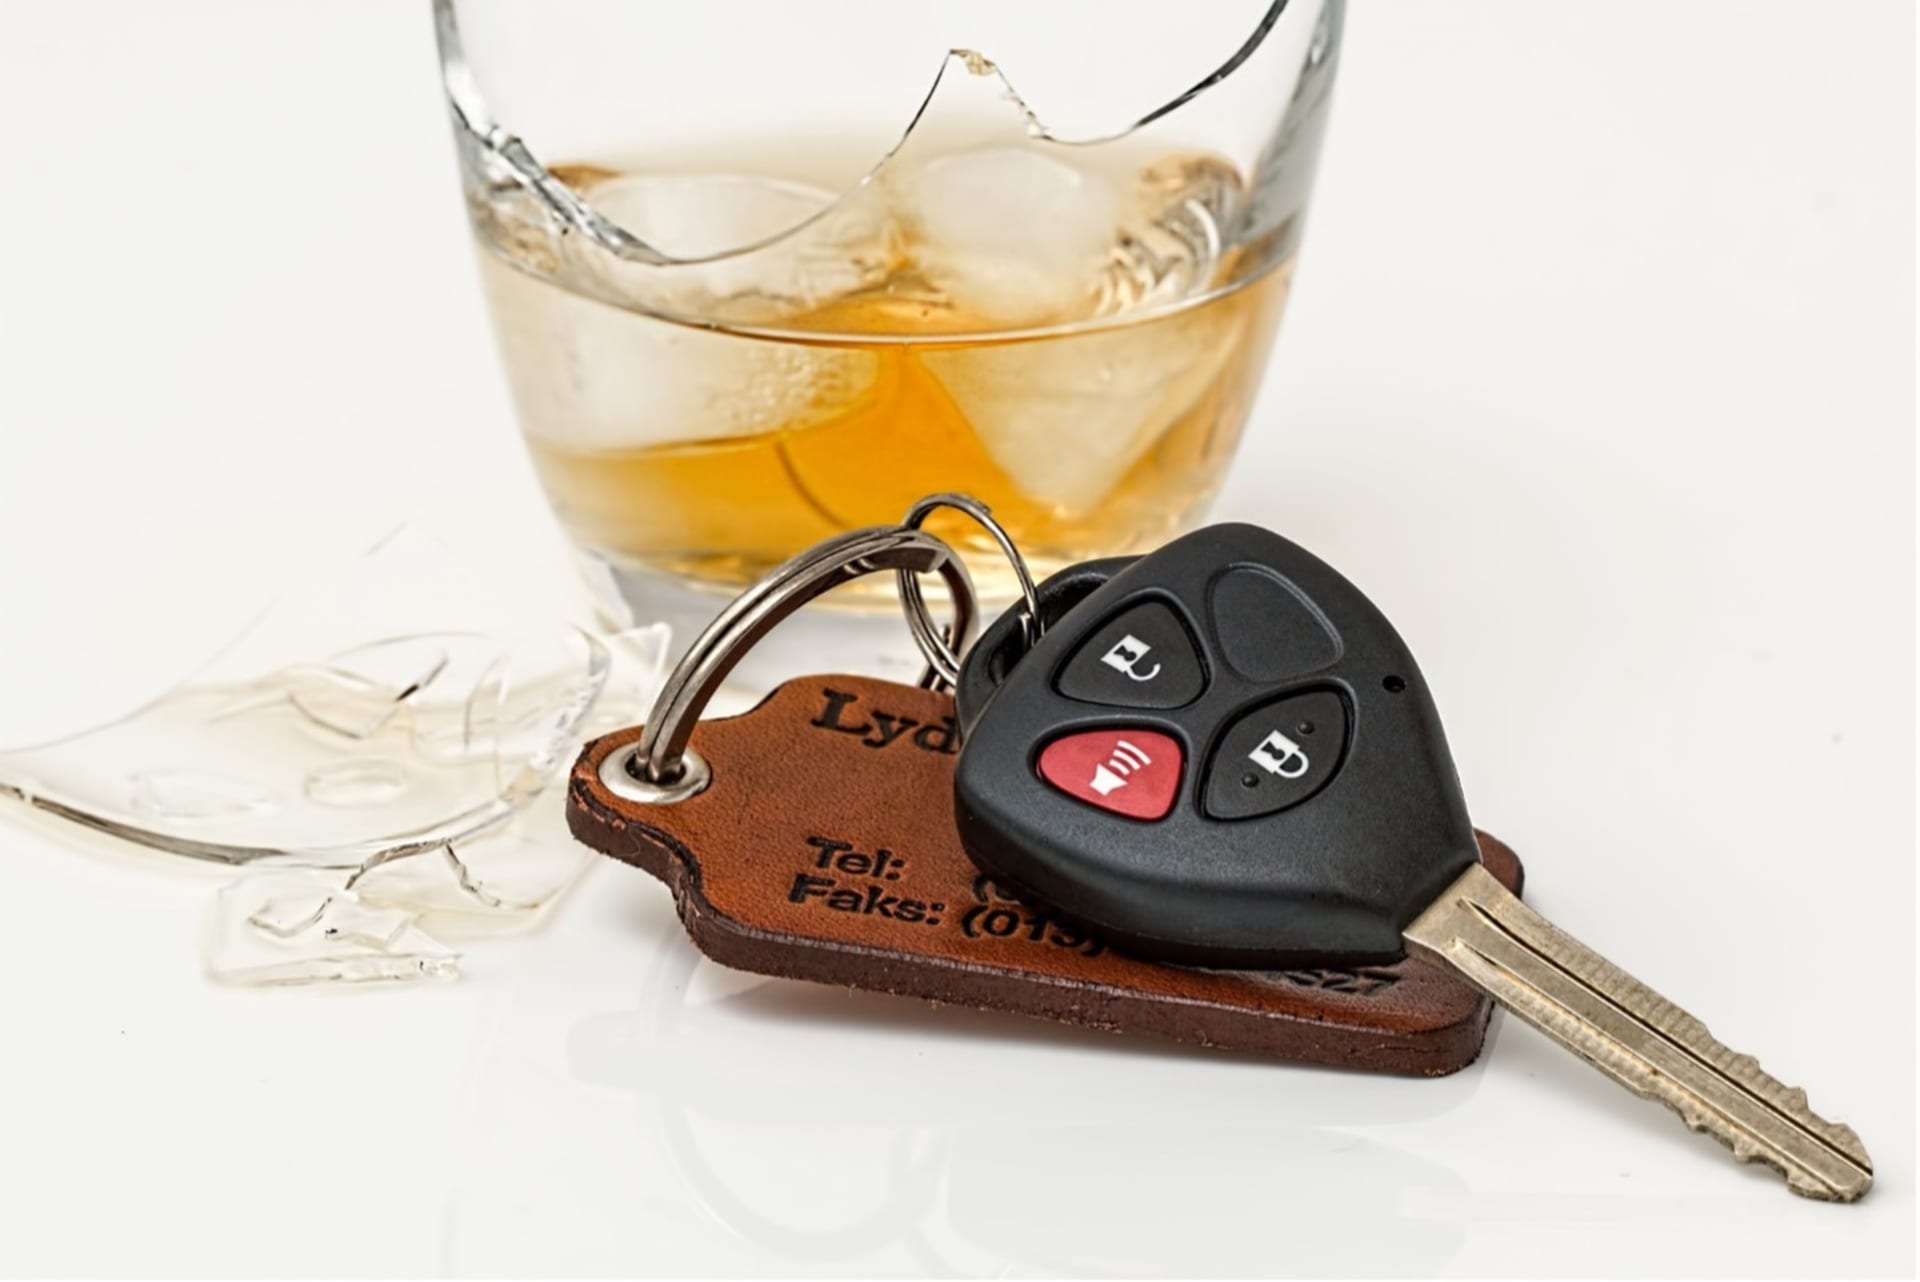 Tolerance alkoholu za volantem. V jaké zemi si můžete dát i panáka?